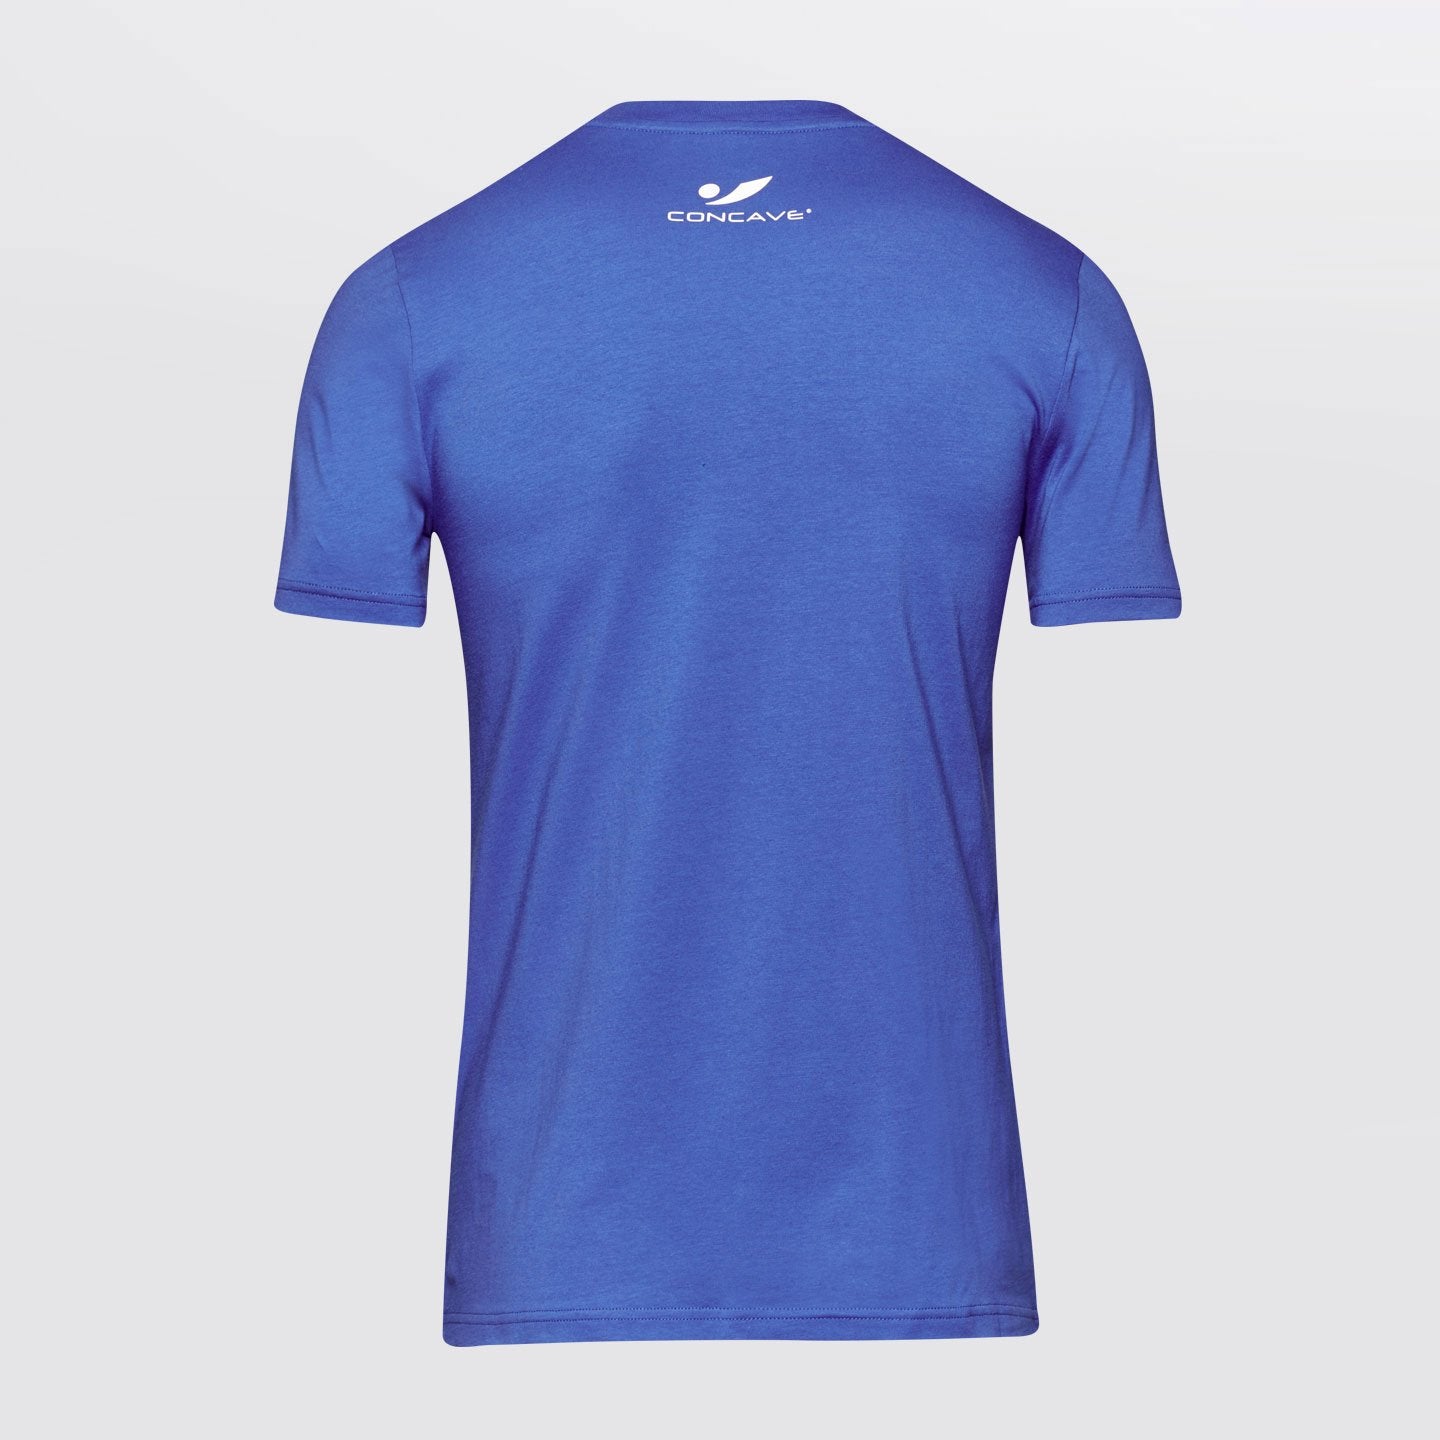 Concave T-Shirt - Blue/White 16.1